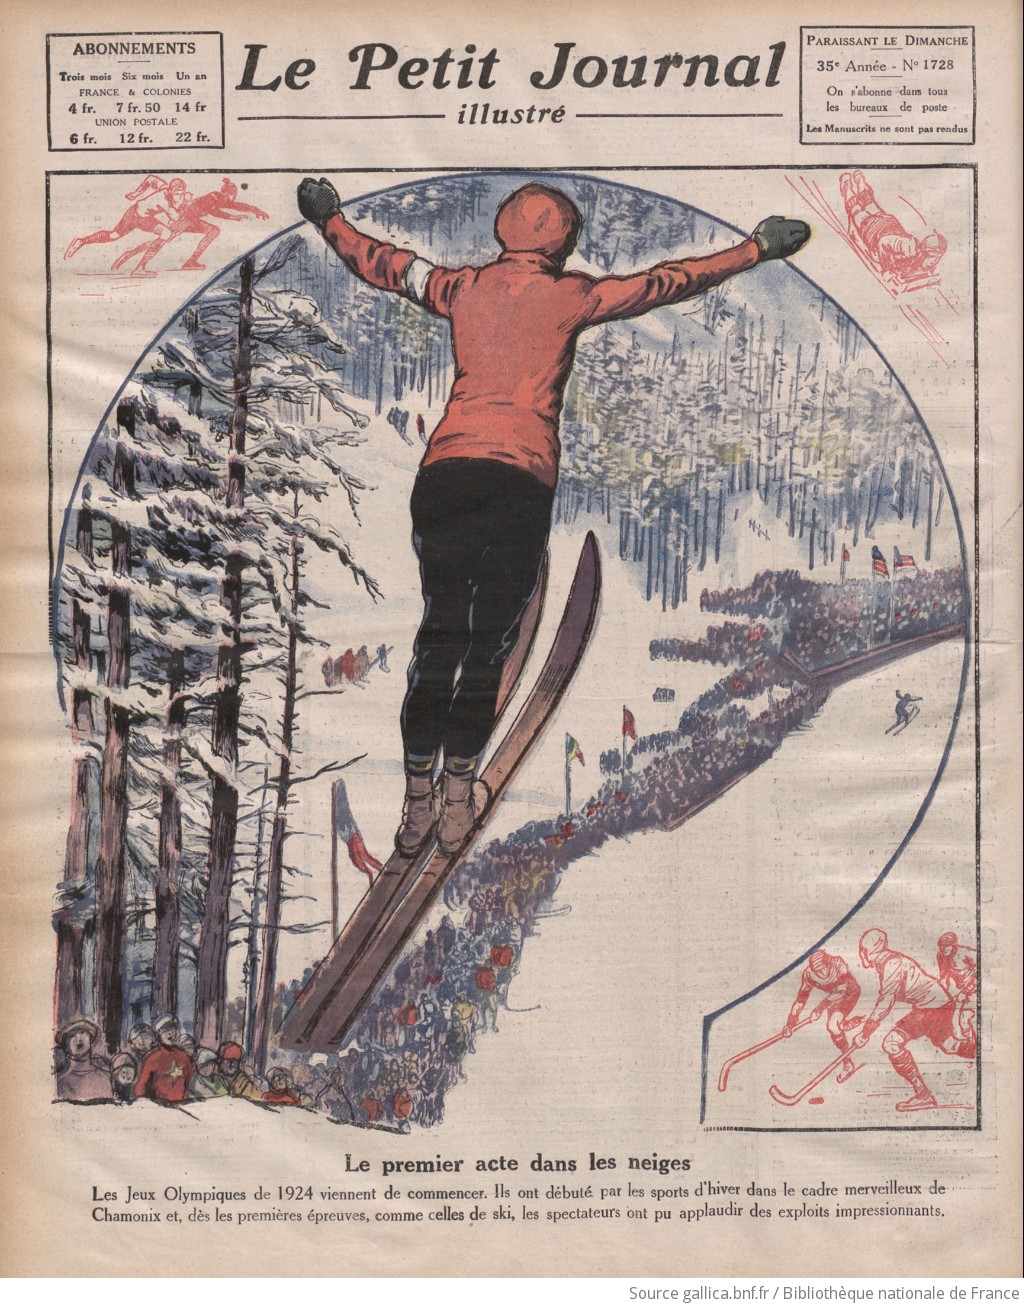 Le Petit journal illustré(Paris) 03 février 1924 (Numéro 1728).